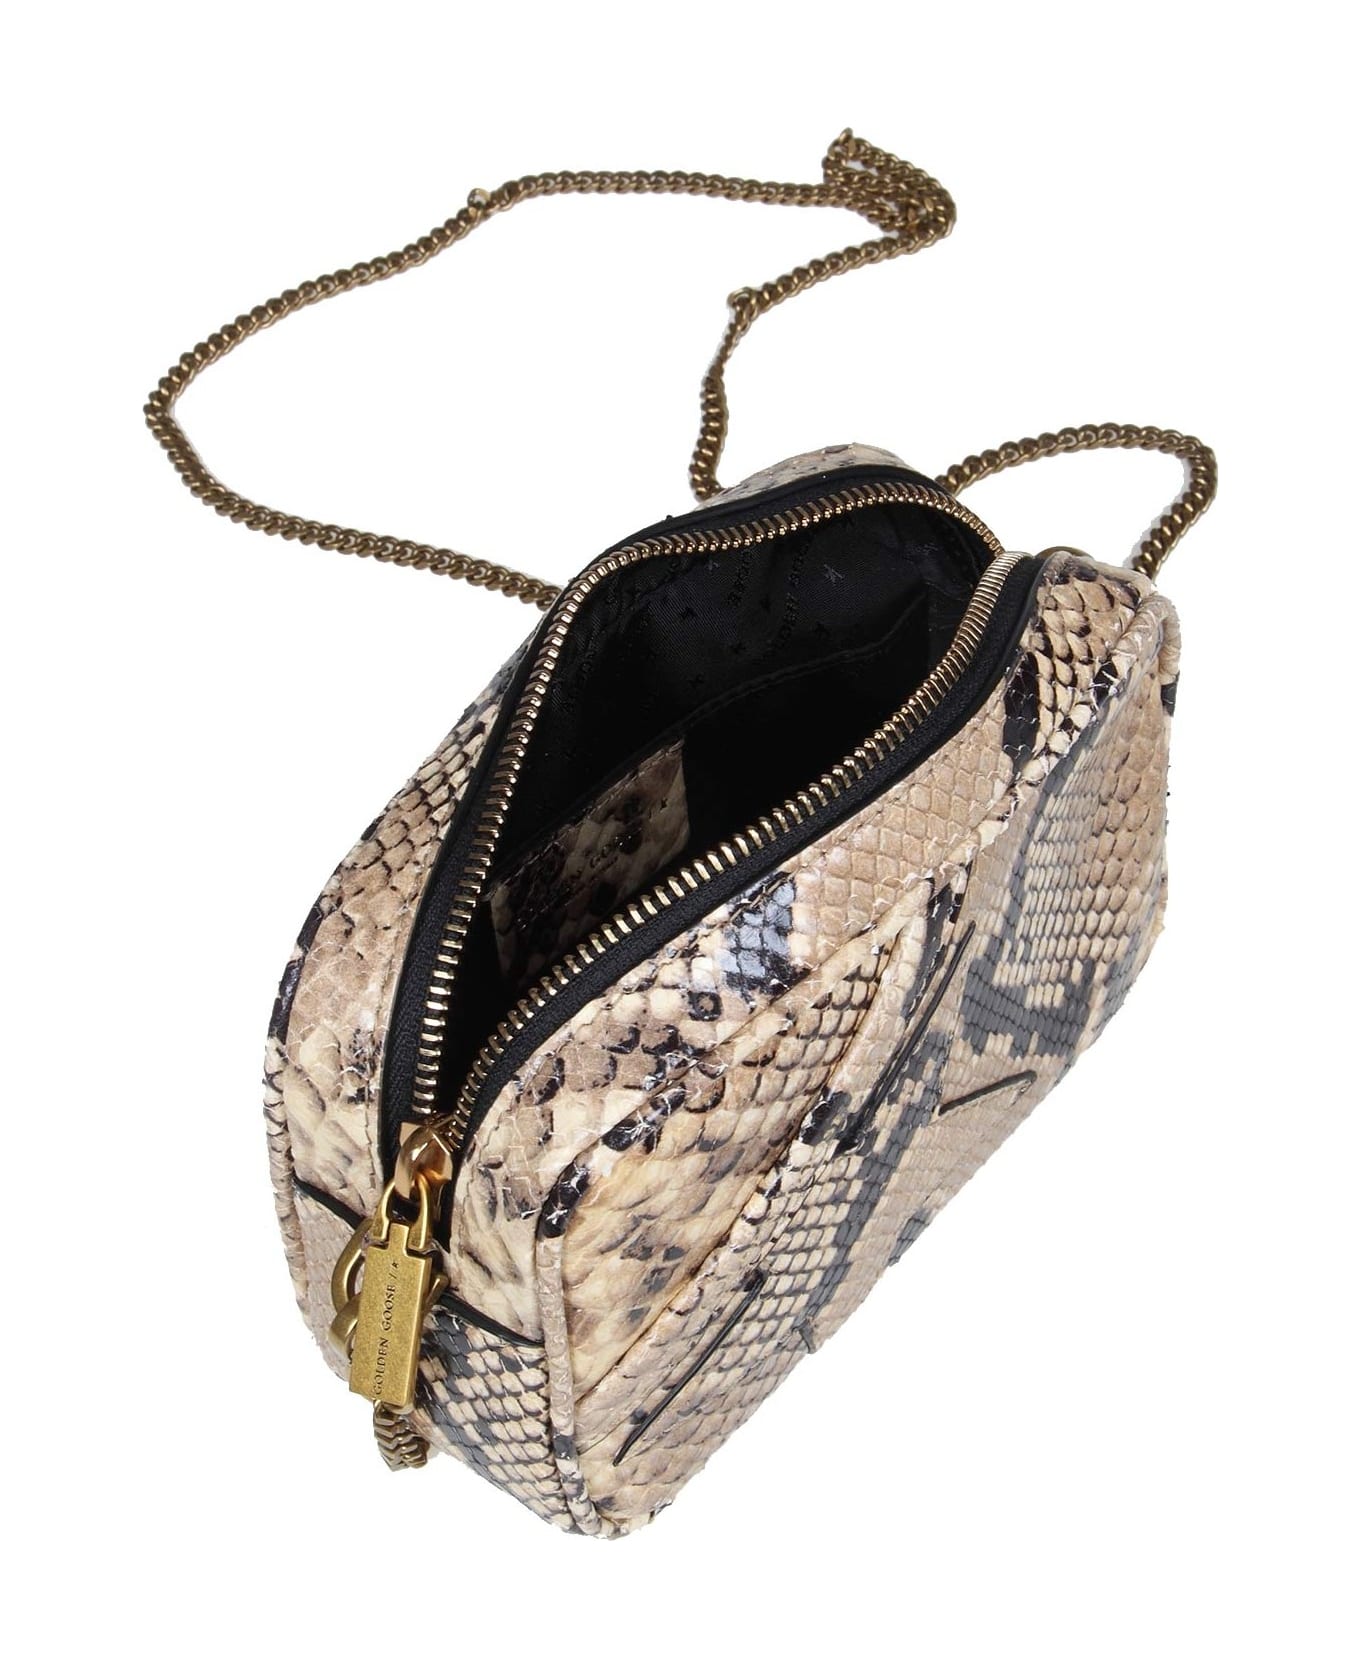 Golden Goose Mini Star Bag Shoulder Bag In Python Print Leather - SAND/BLACK